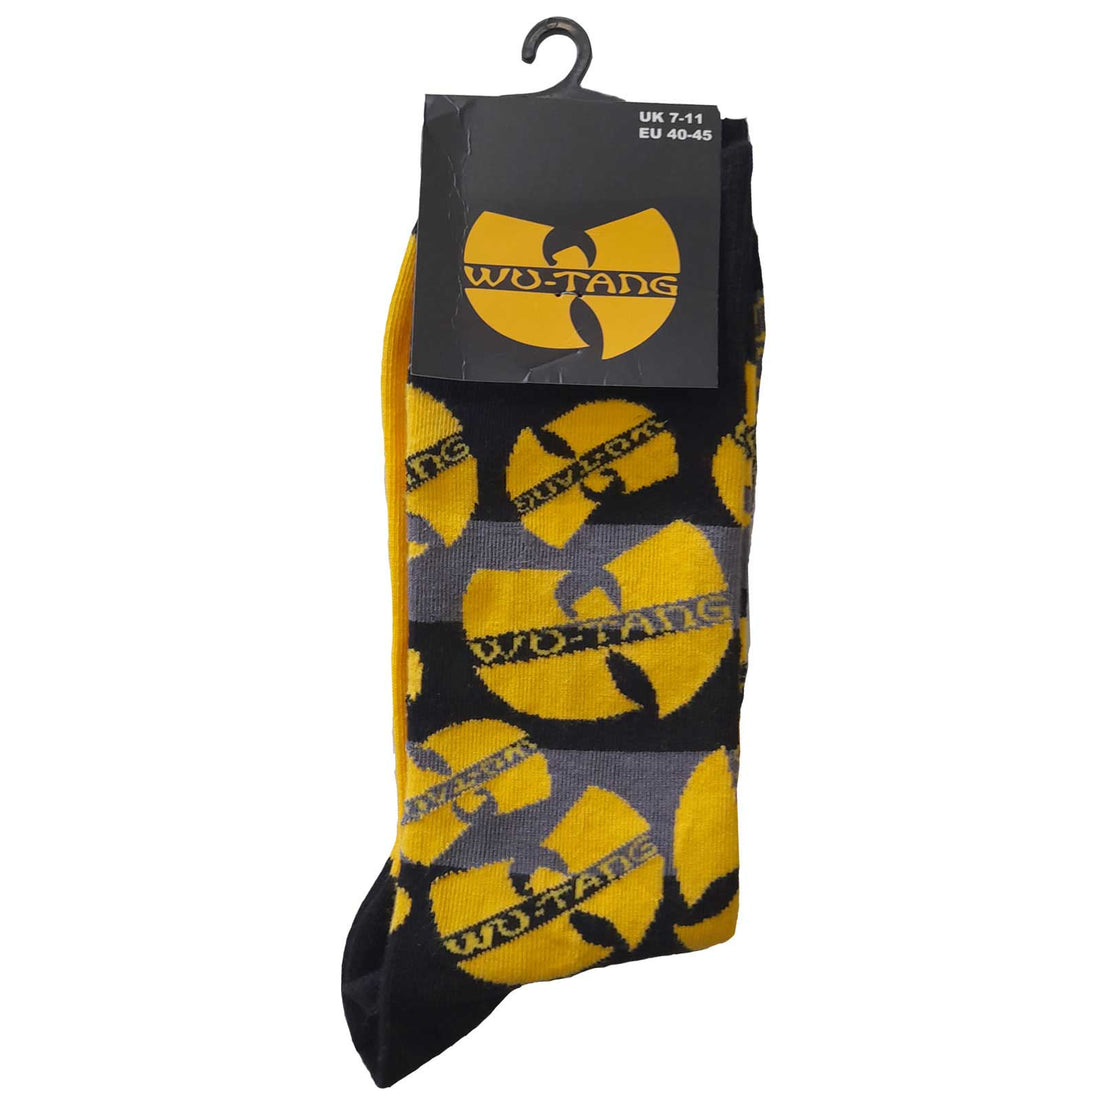 Wu-Tang Clan Unisex Ankle Socks: Logos Yellow (UK Size 7 - 11)